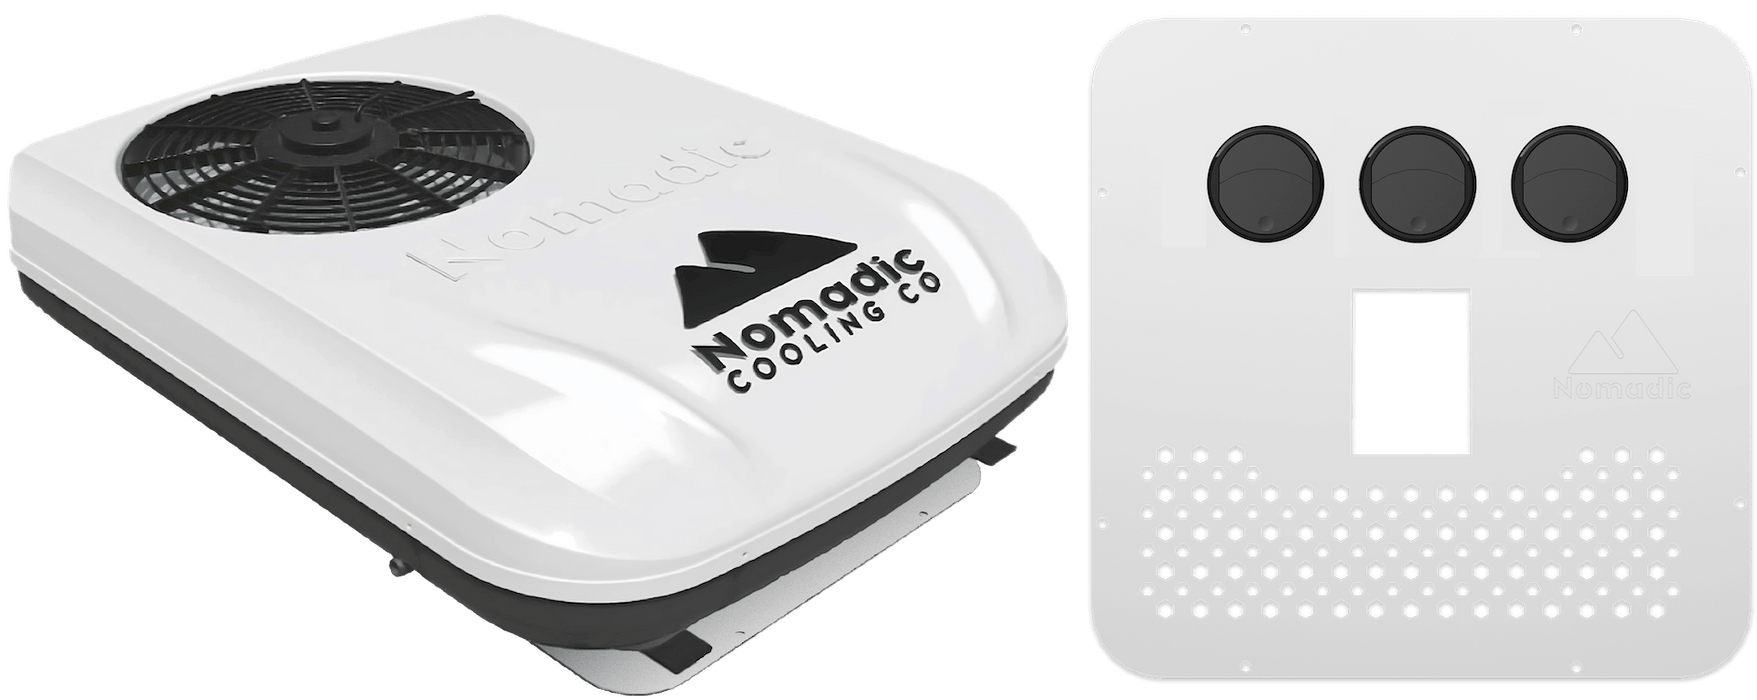 Nomadic Cooling X2 48V Camper Van Air Conditioner